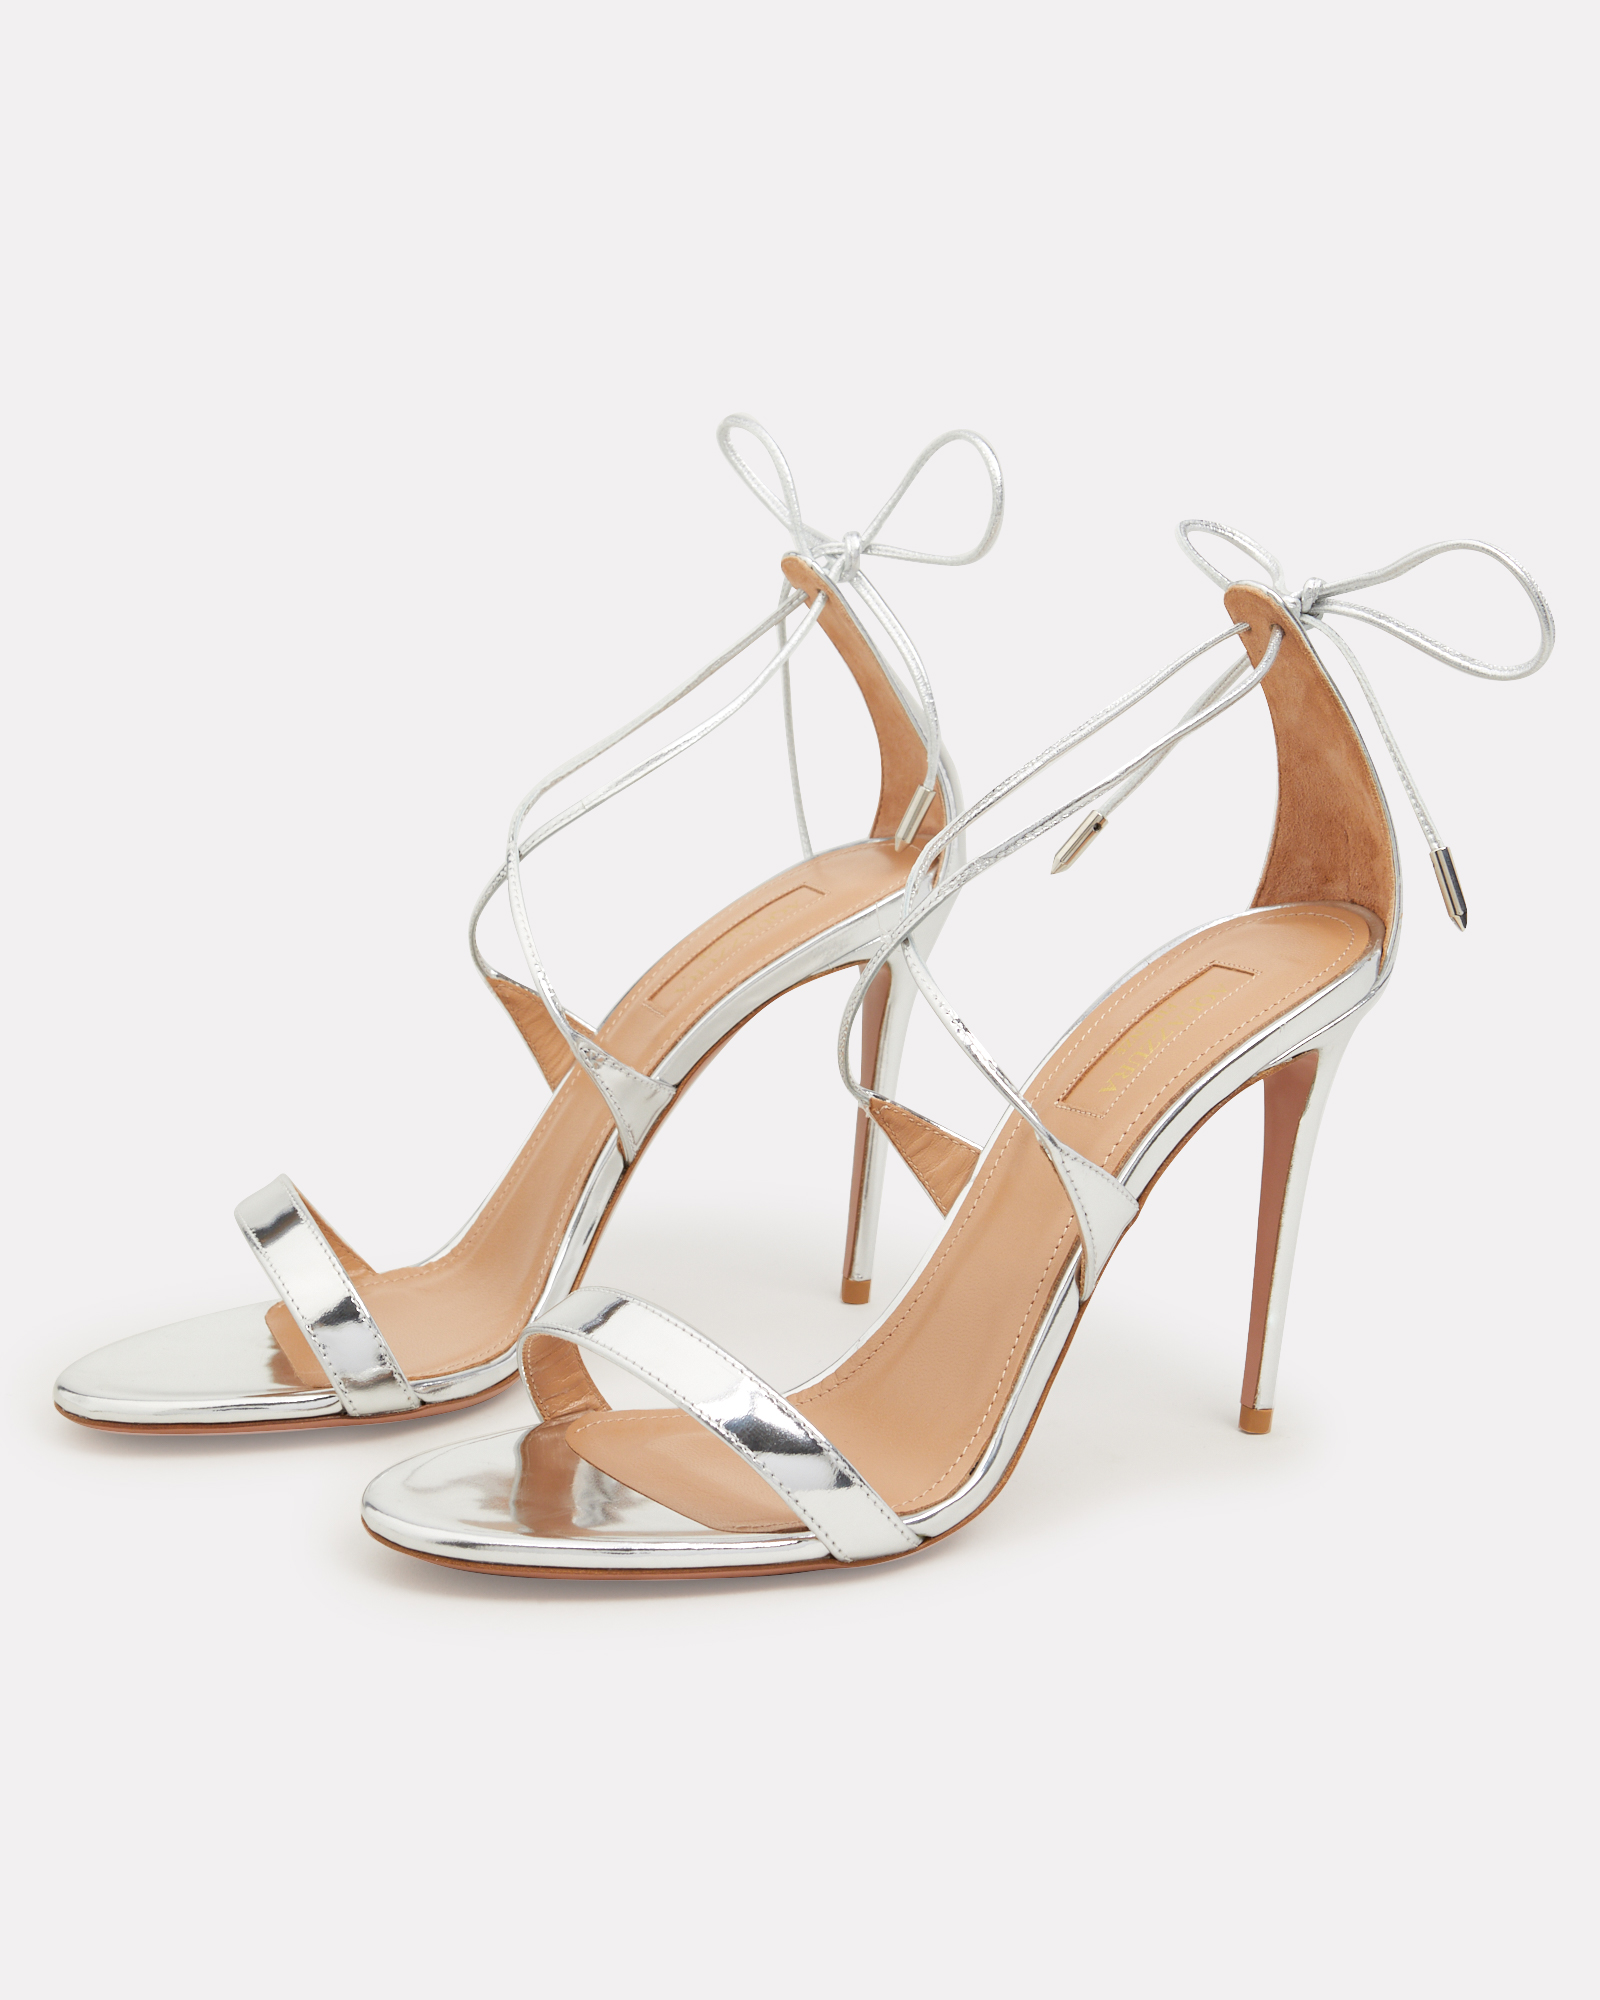 Aquazzura Linda Strappy Stiletto Sandals in rf 4 silver | INTERMIX®